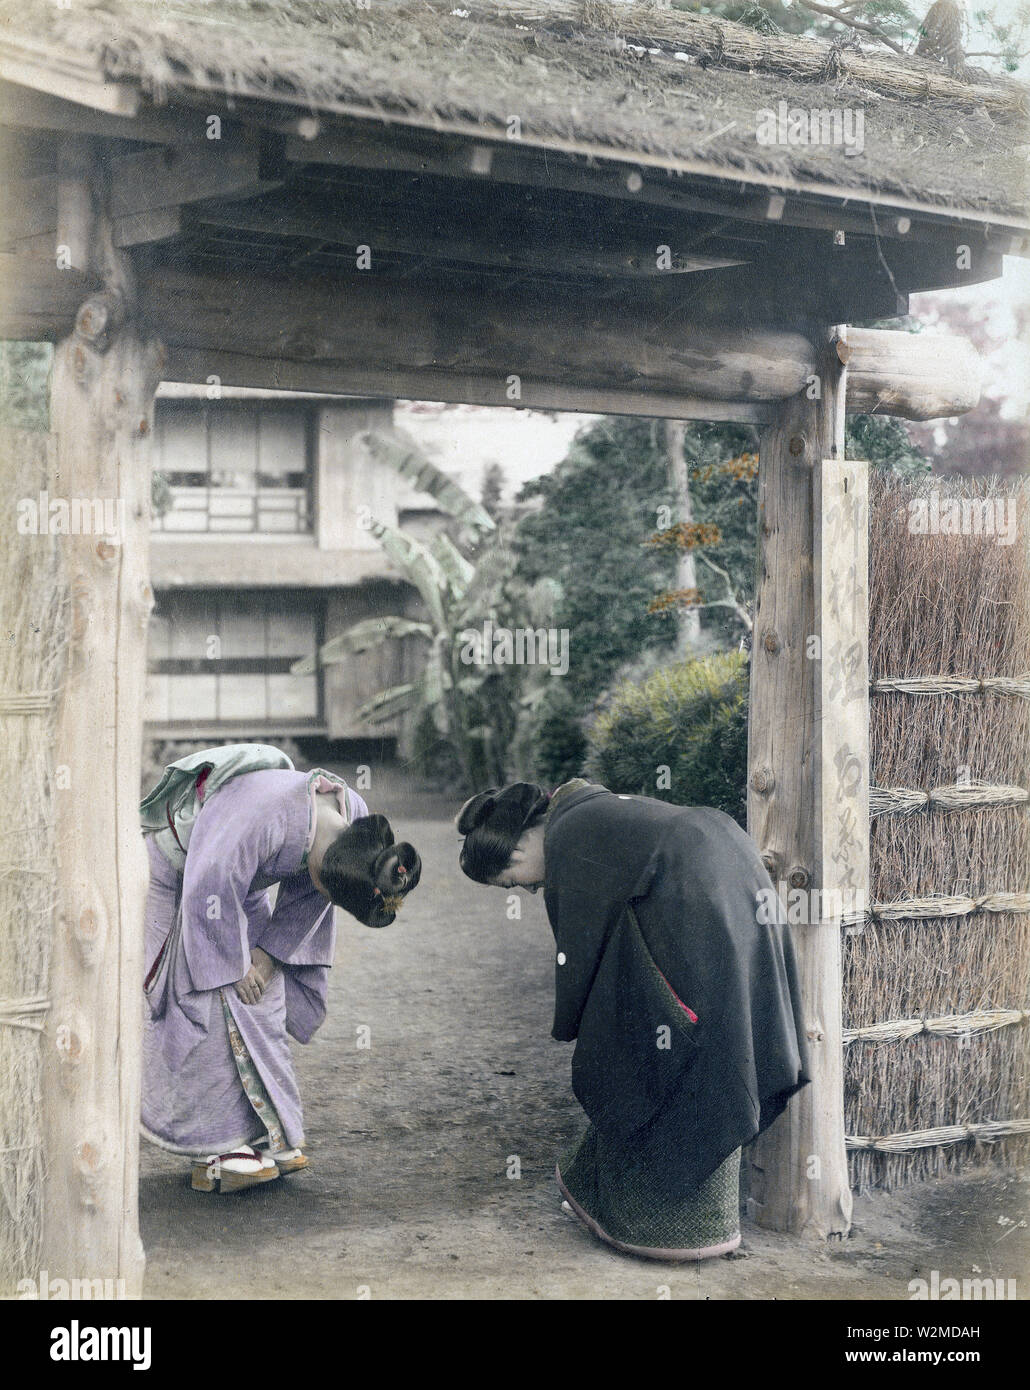 [1880s Japan - Japanische Frauen Begrüßung am Tor] - Zwei junge japanische Frauen im Kimono und traditionellen Kopfbedeckungen Bug am Gate eines privaten Hauses. 19 Vintage albumen Foto. Stockfoto